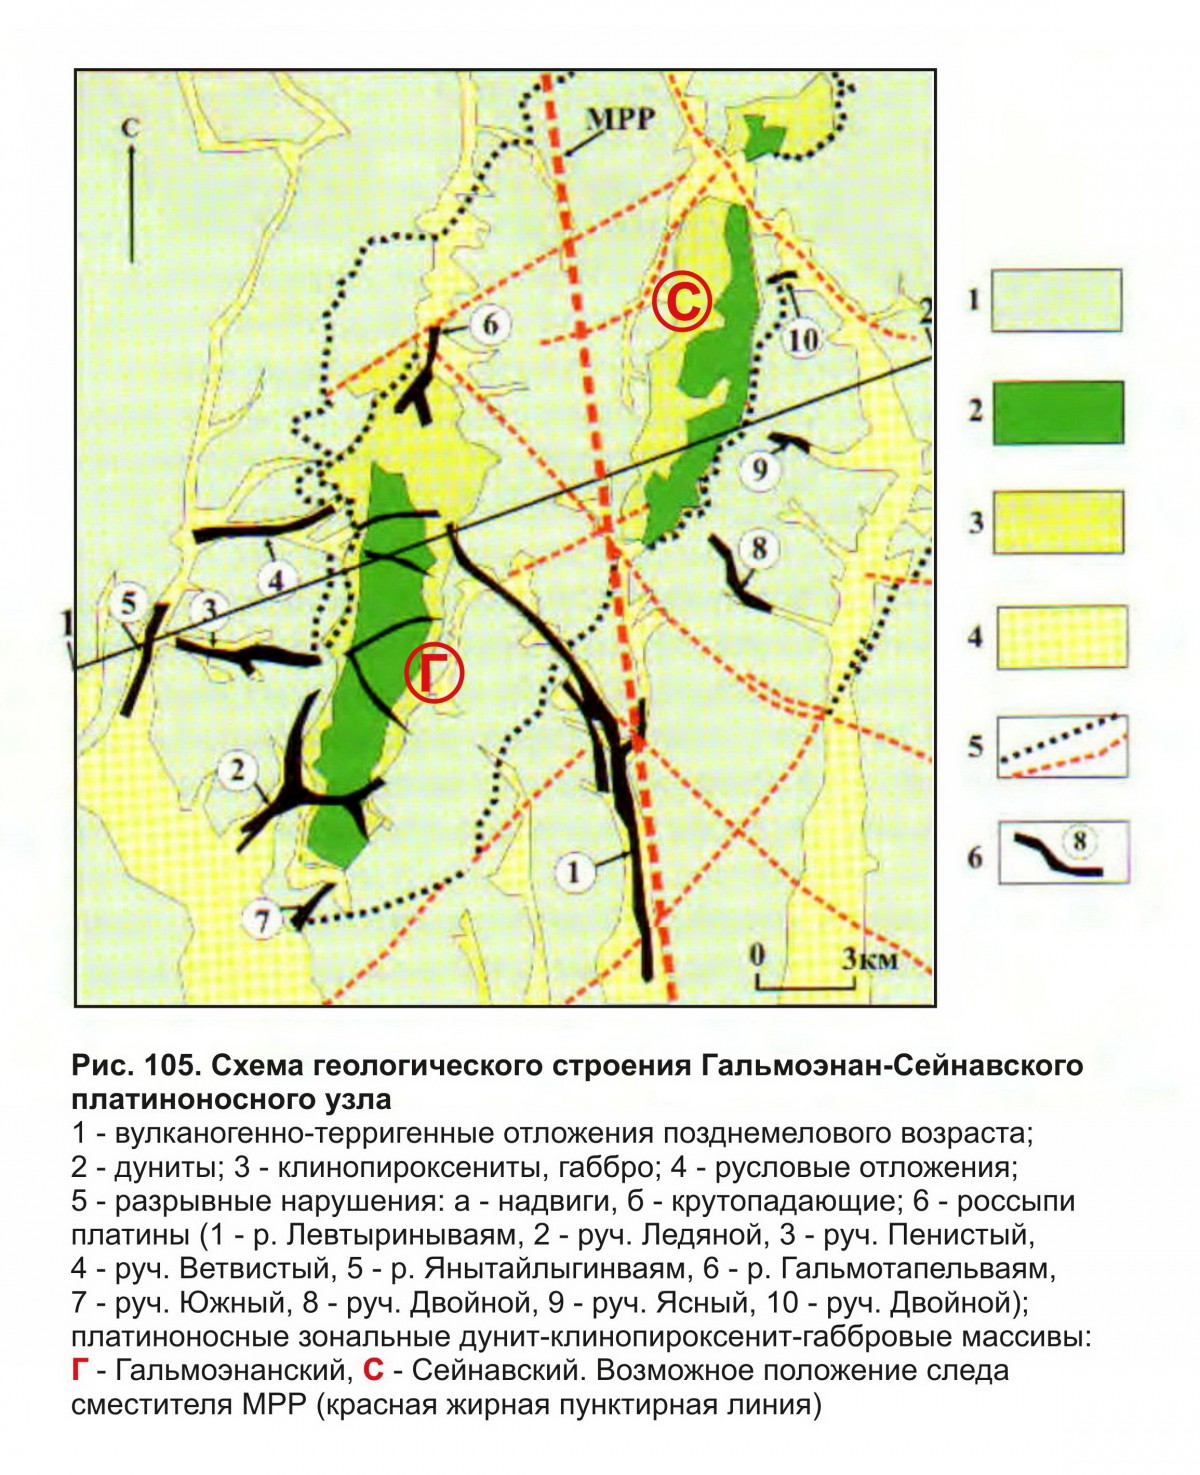 Схема Гальмоэнан-Сейнавского платиноносного узла. Фотография месторождения. Гальмоэнанский массив, Северо-Восточный регион, Россия.